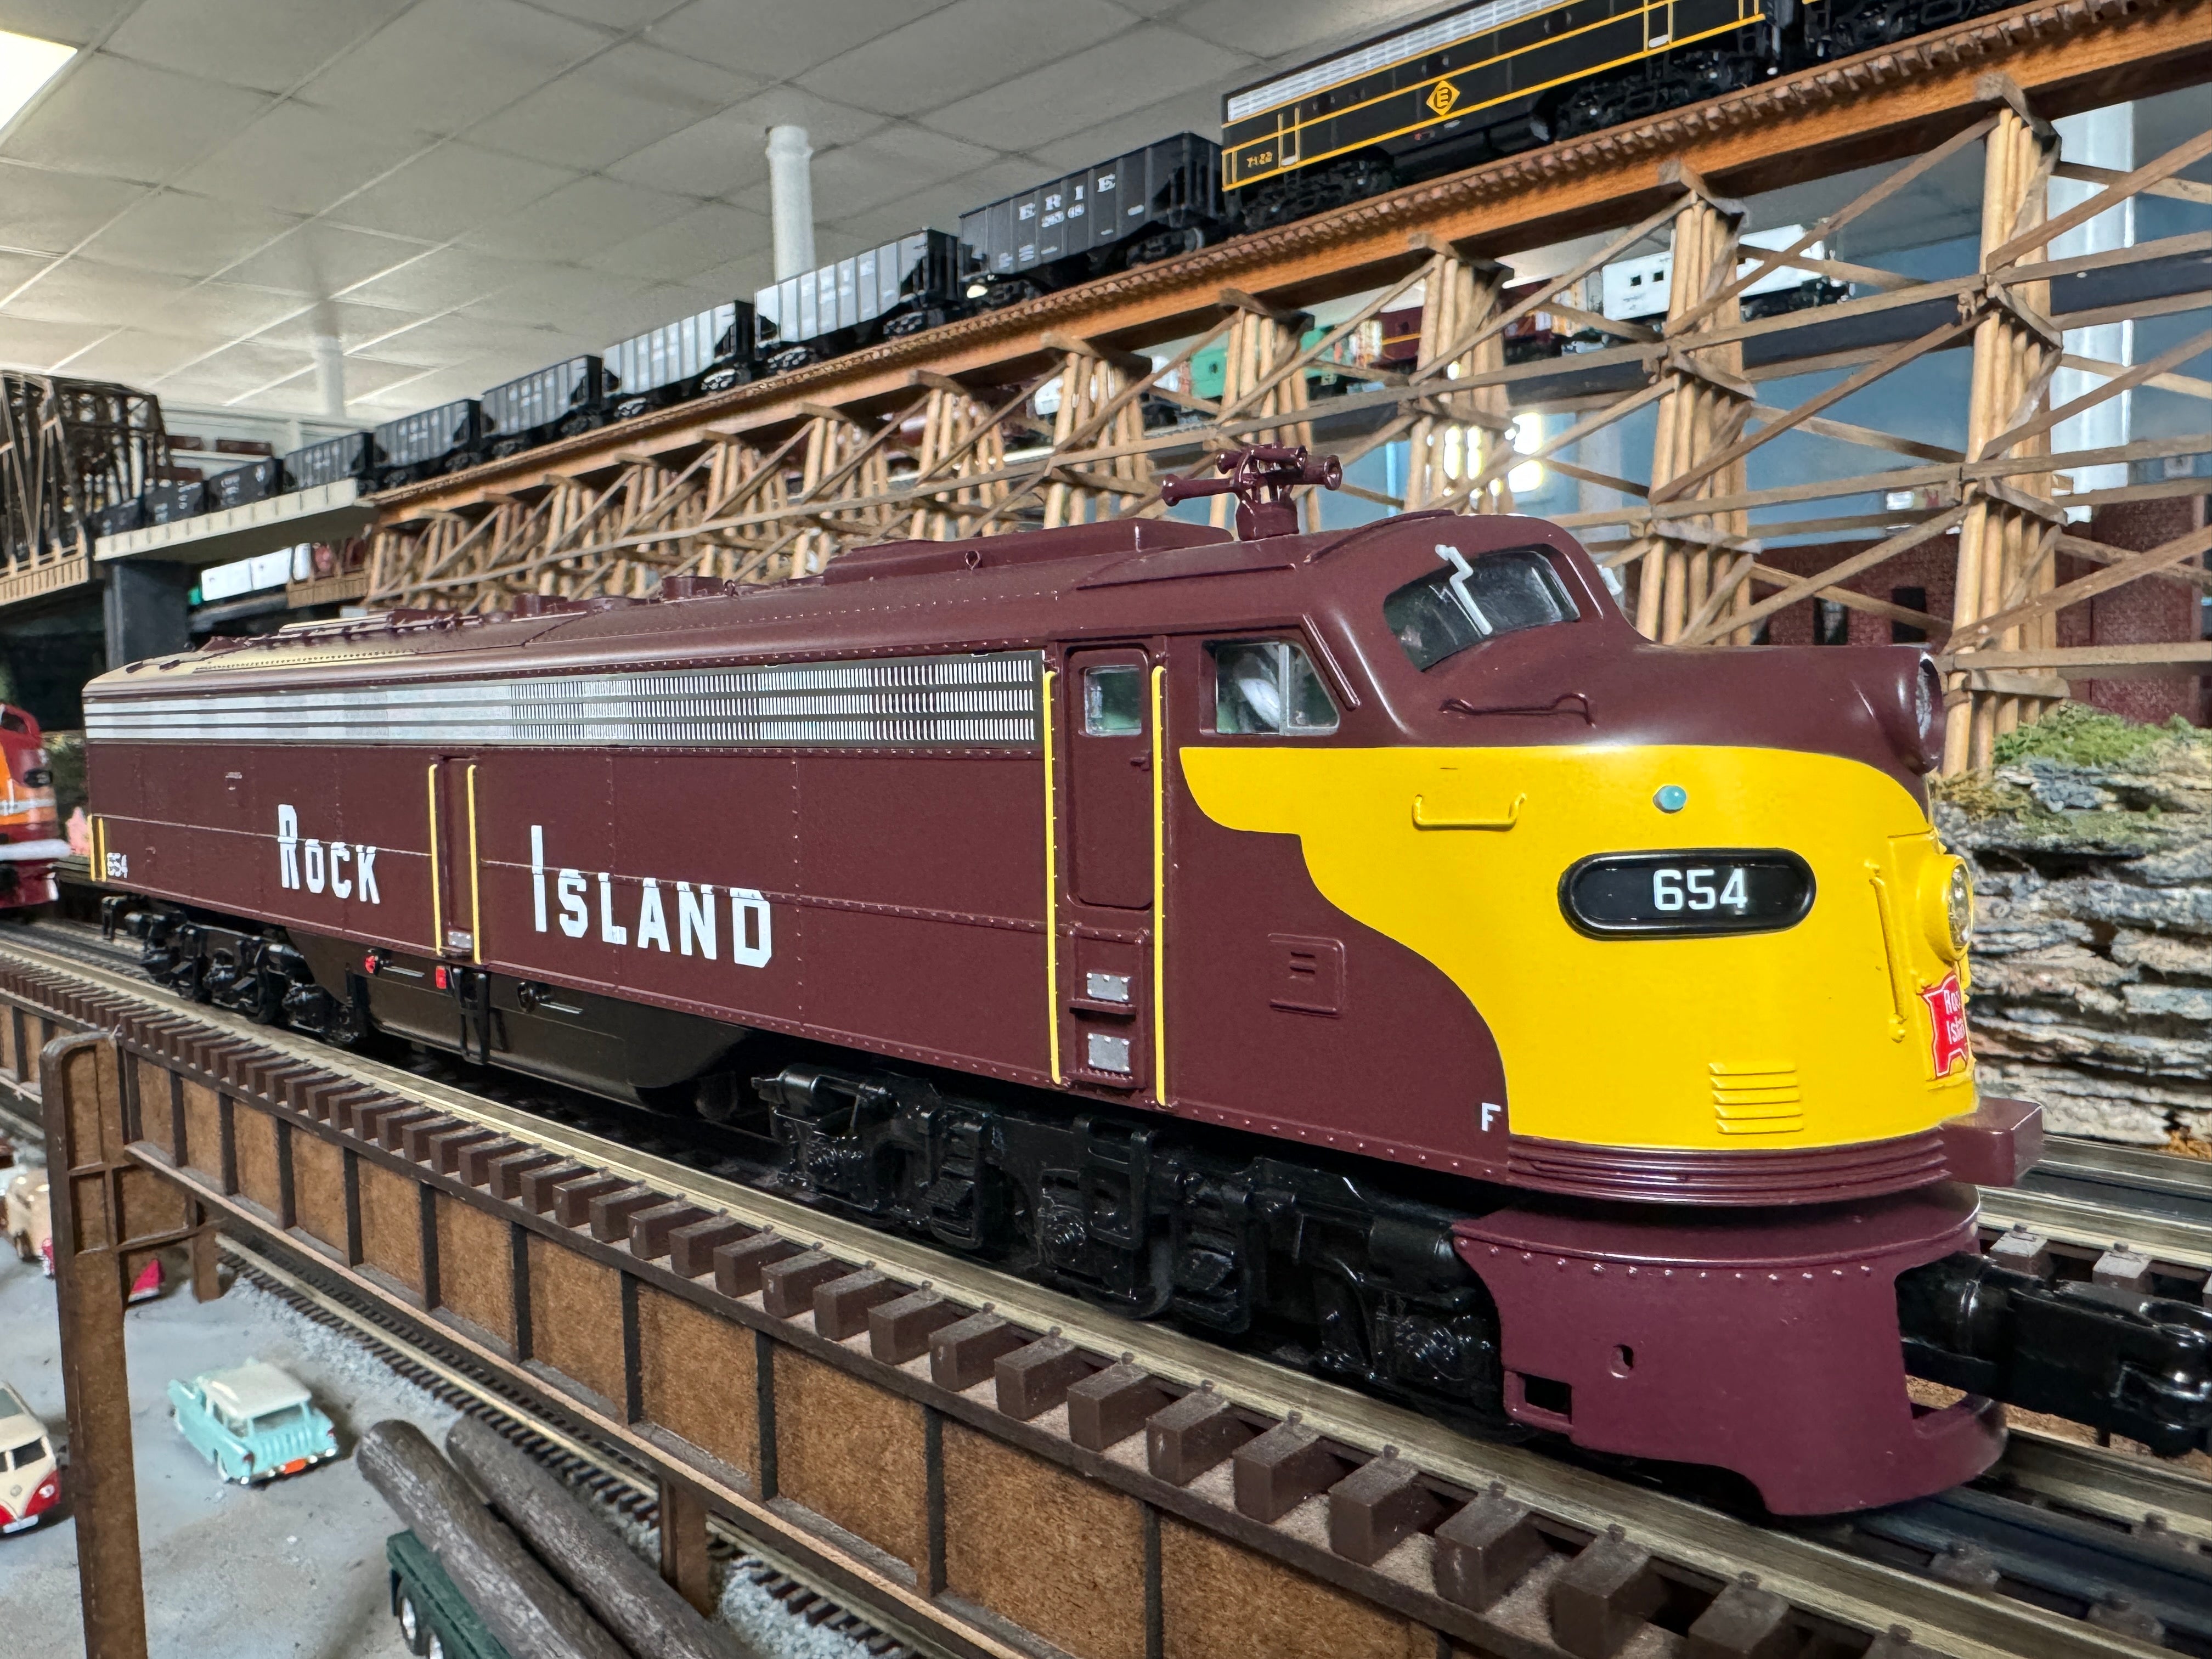 Atlas O 30138237 - Premier - E8 Diesel Locomotive "Rock Island" #646 w/ PS3 (Powered)